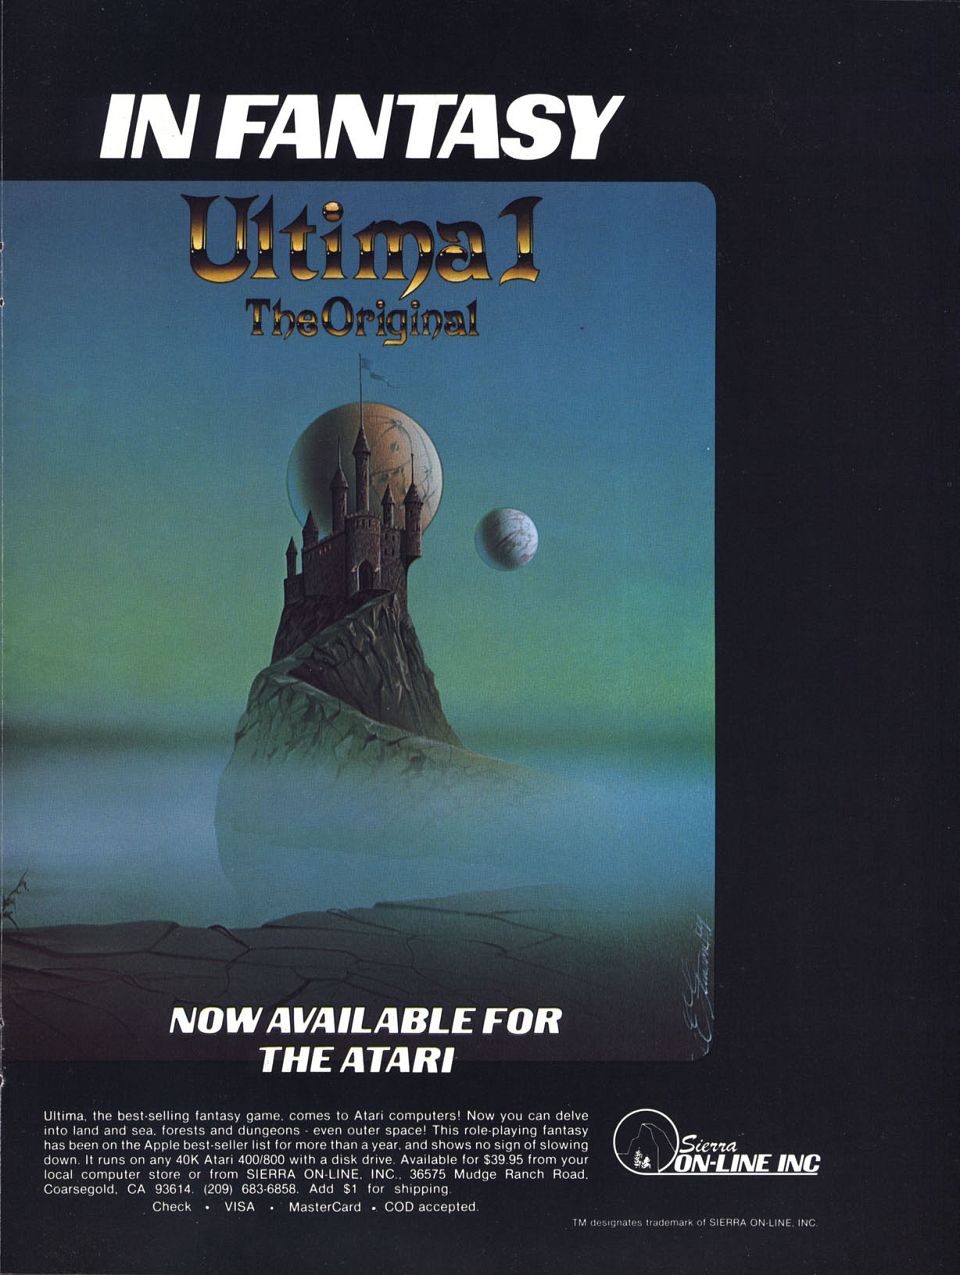 The Ultimate in Fantasy: Ultima I